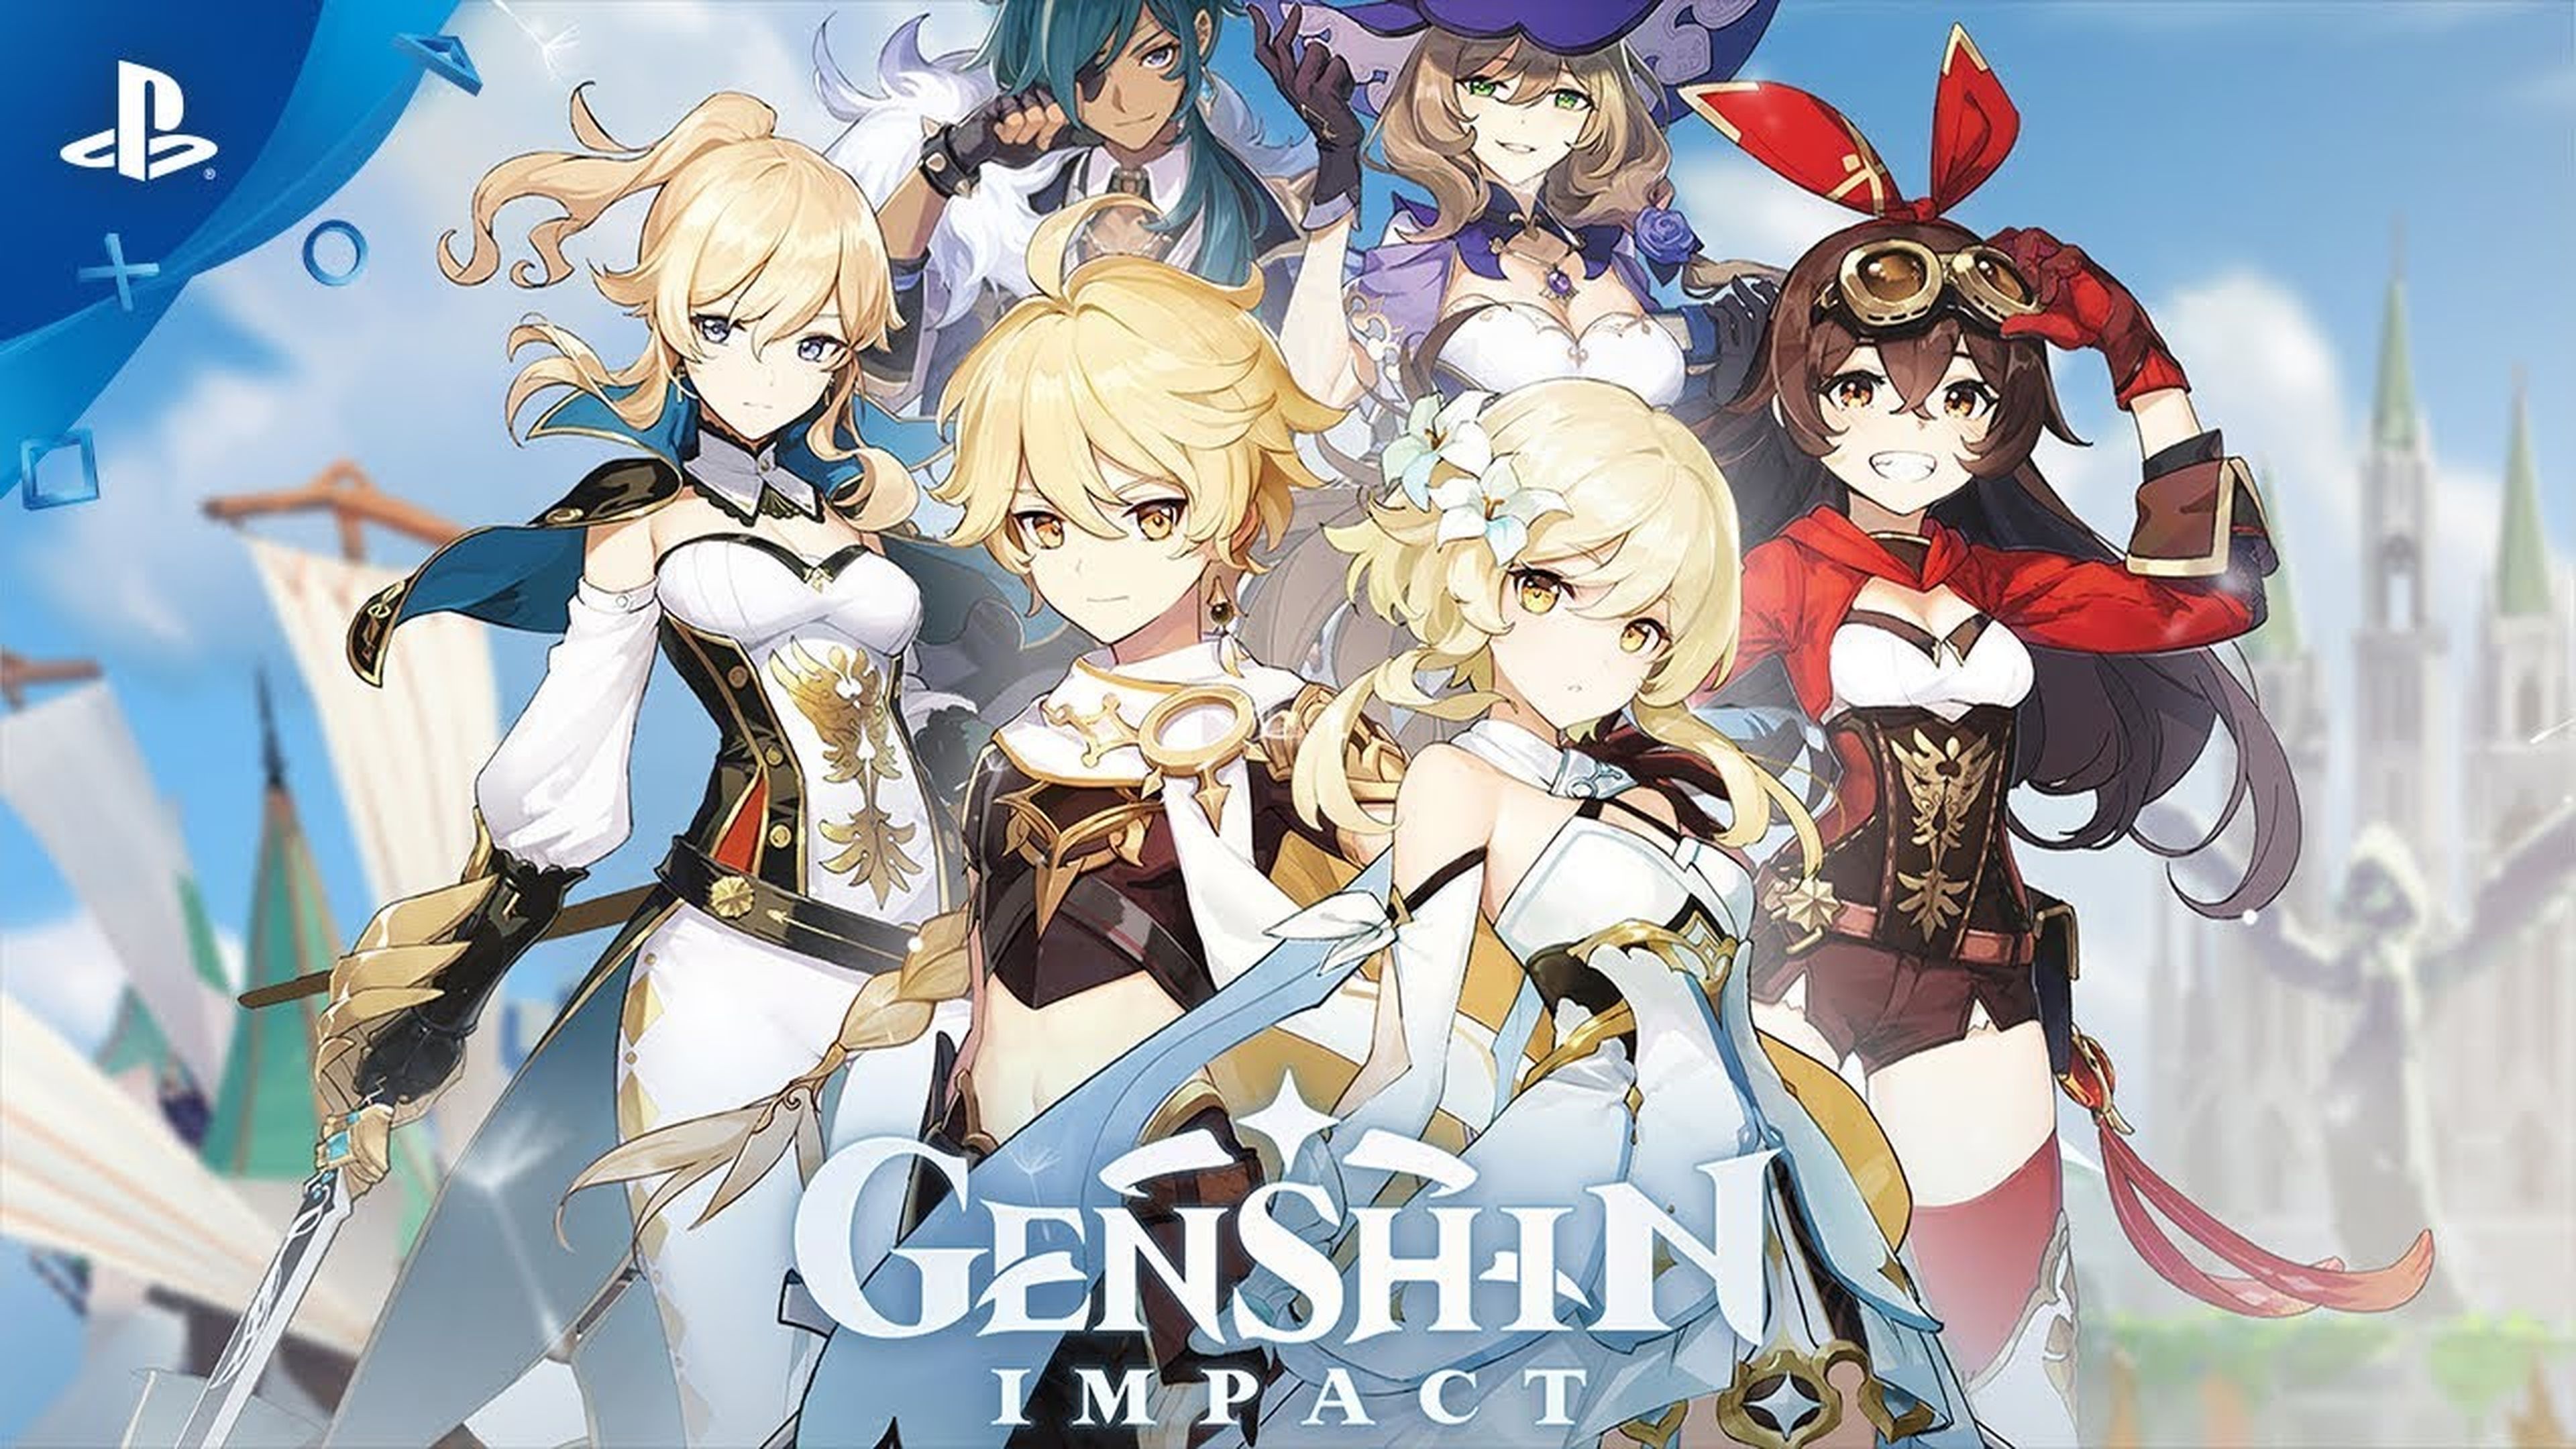 Genshin Impact PS4